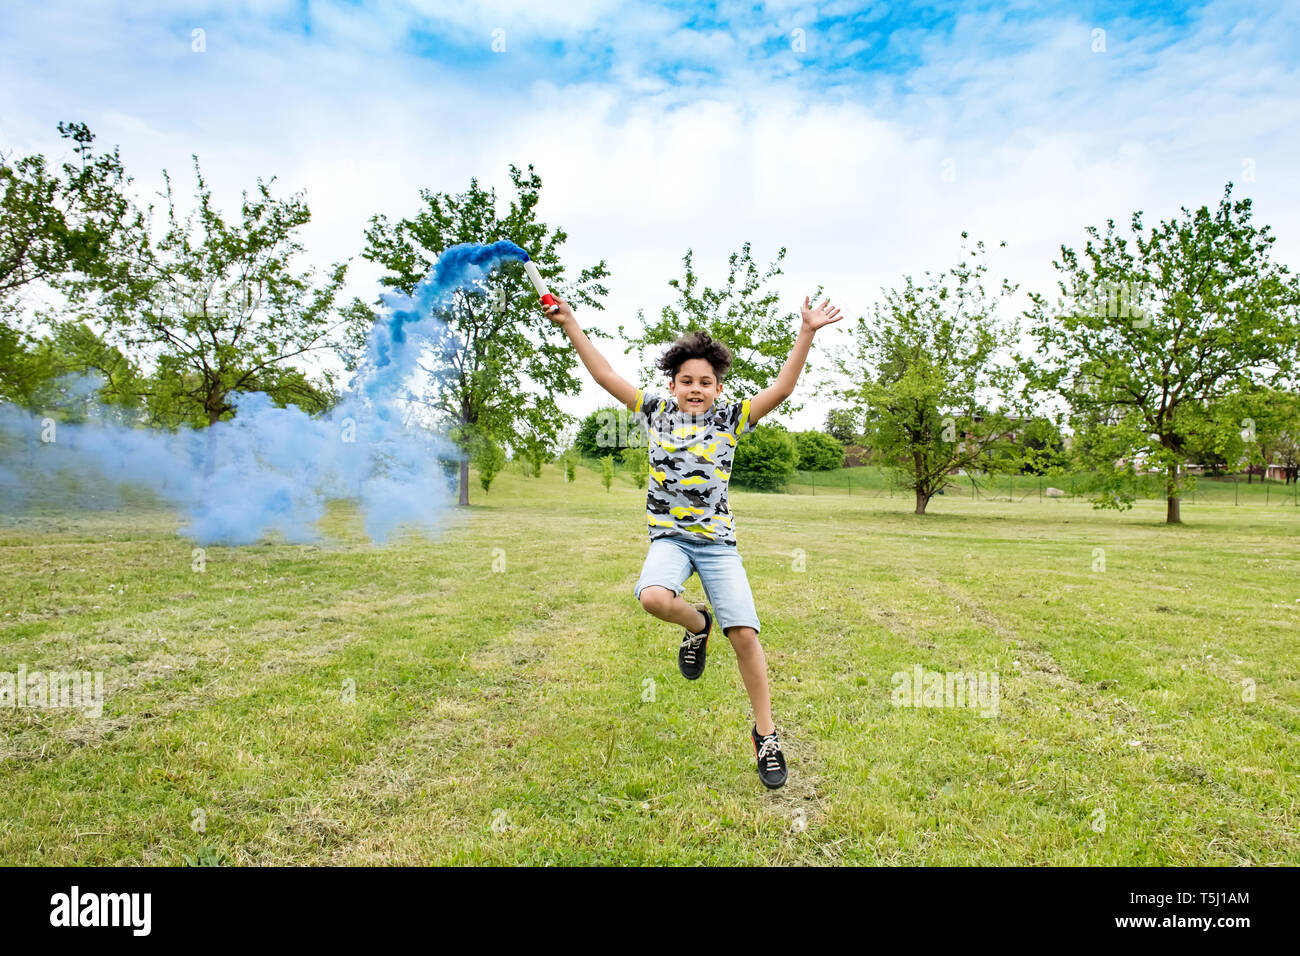 Felice di spensierata giovane ragazzo giocando con una svasatura blu in tutta l'erba fumo posteriore dietro di lui un fresco verde parco o giardino Foto Stock